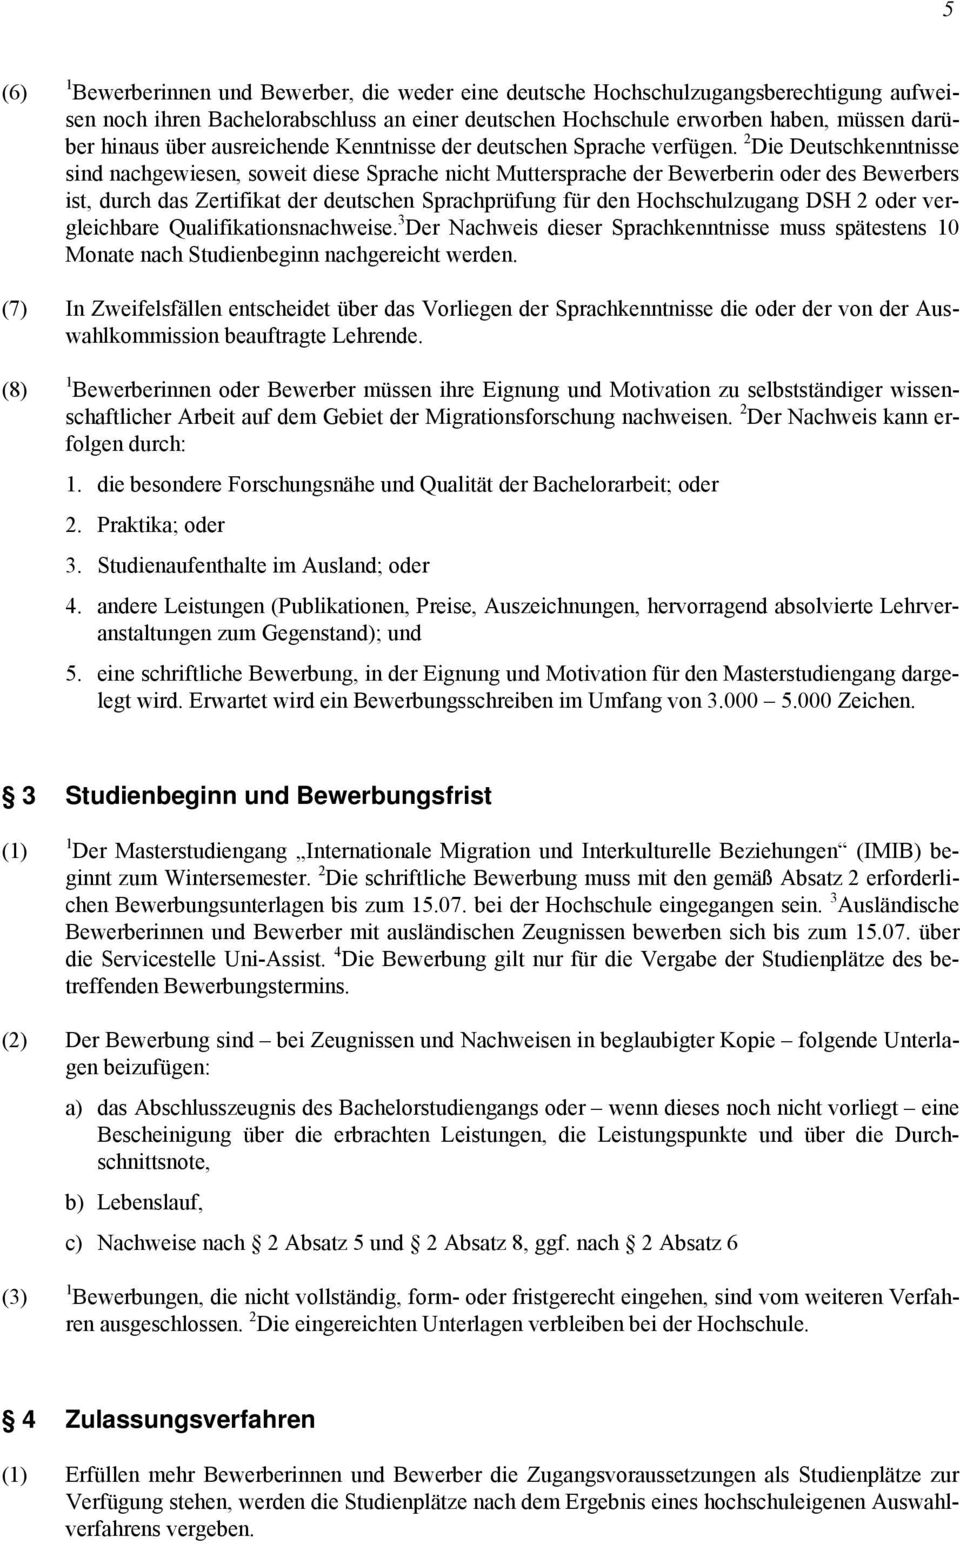 2 Die Deutschkenntnisse sind nachgewiesen, soweit diese Sprache nicht Muttersprache der Bewerberin oder des Bewerbers ist, durch das Zertifikat der deutschen Sprachprüfung für den Hochschulzugang DSH